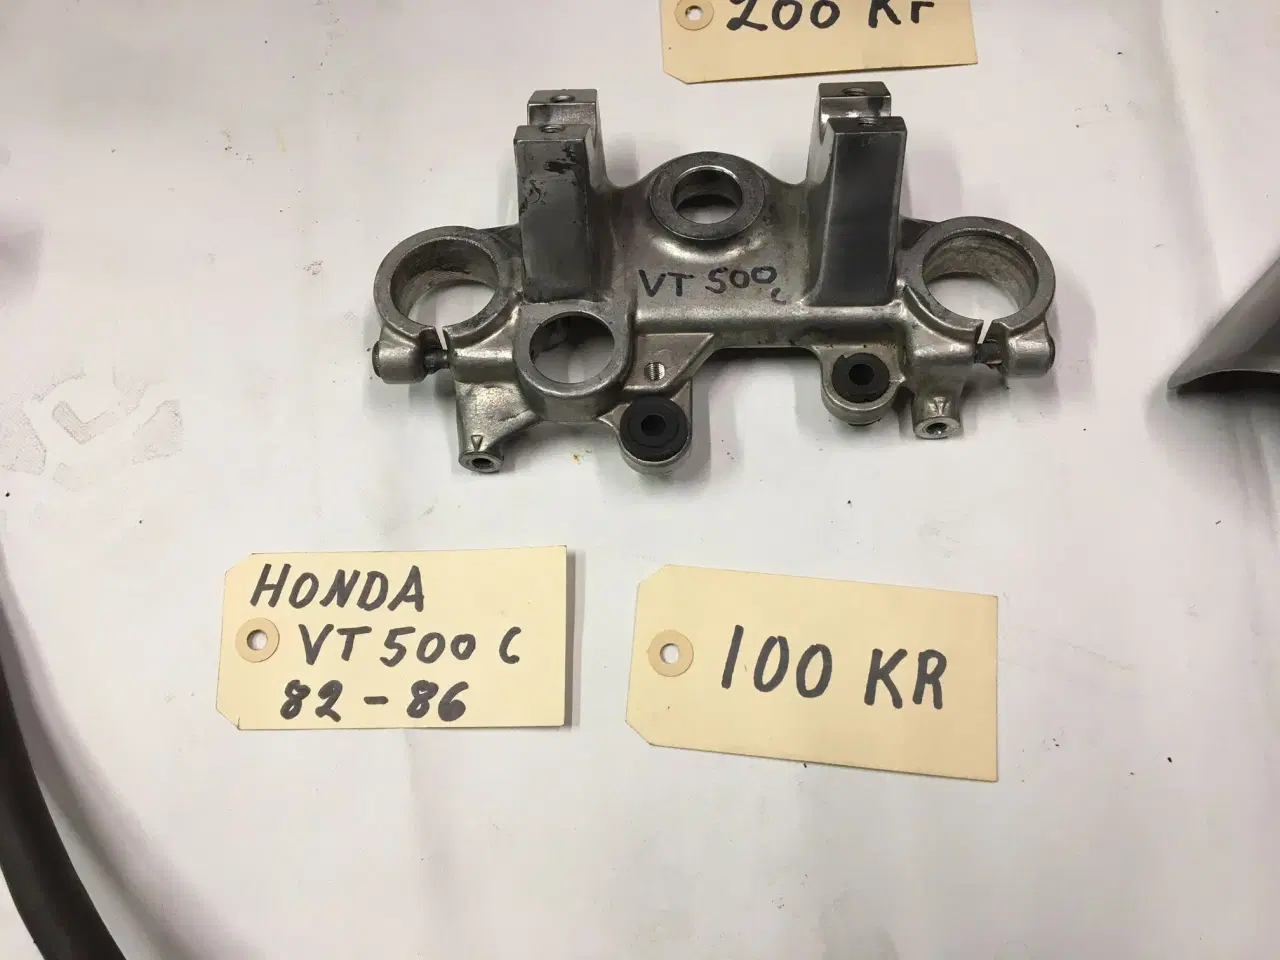 Billede 9 - Køler til Honda VT 500 C 84-86 Klik på foto og